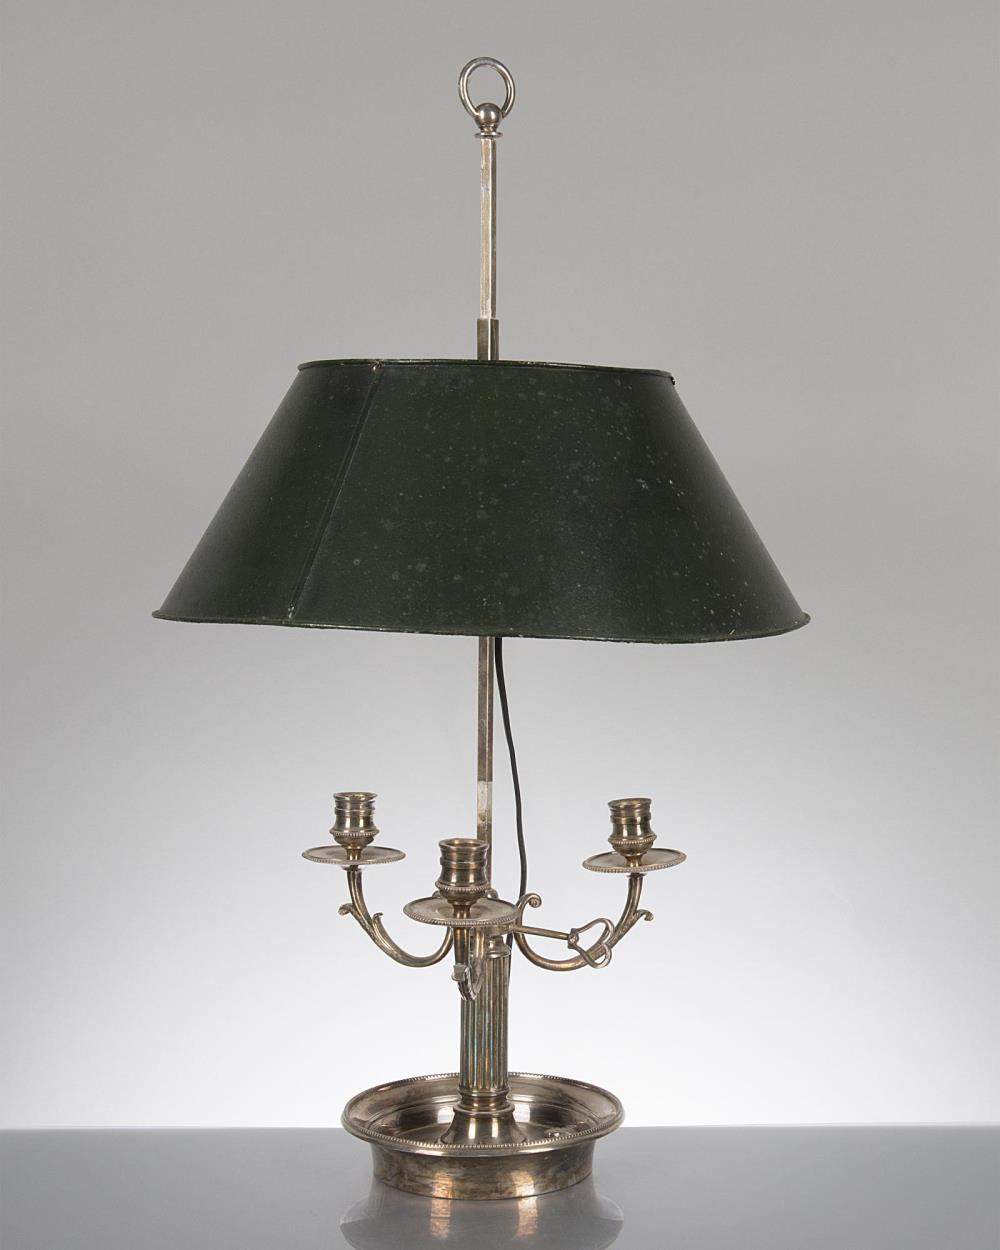 lampe bouillote à 3 feux et abat-jour en tôle peinte.

H. 68.5 cm 
 
Provenance: Château de - Image 2 of 2